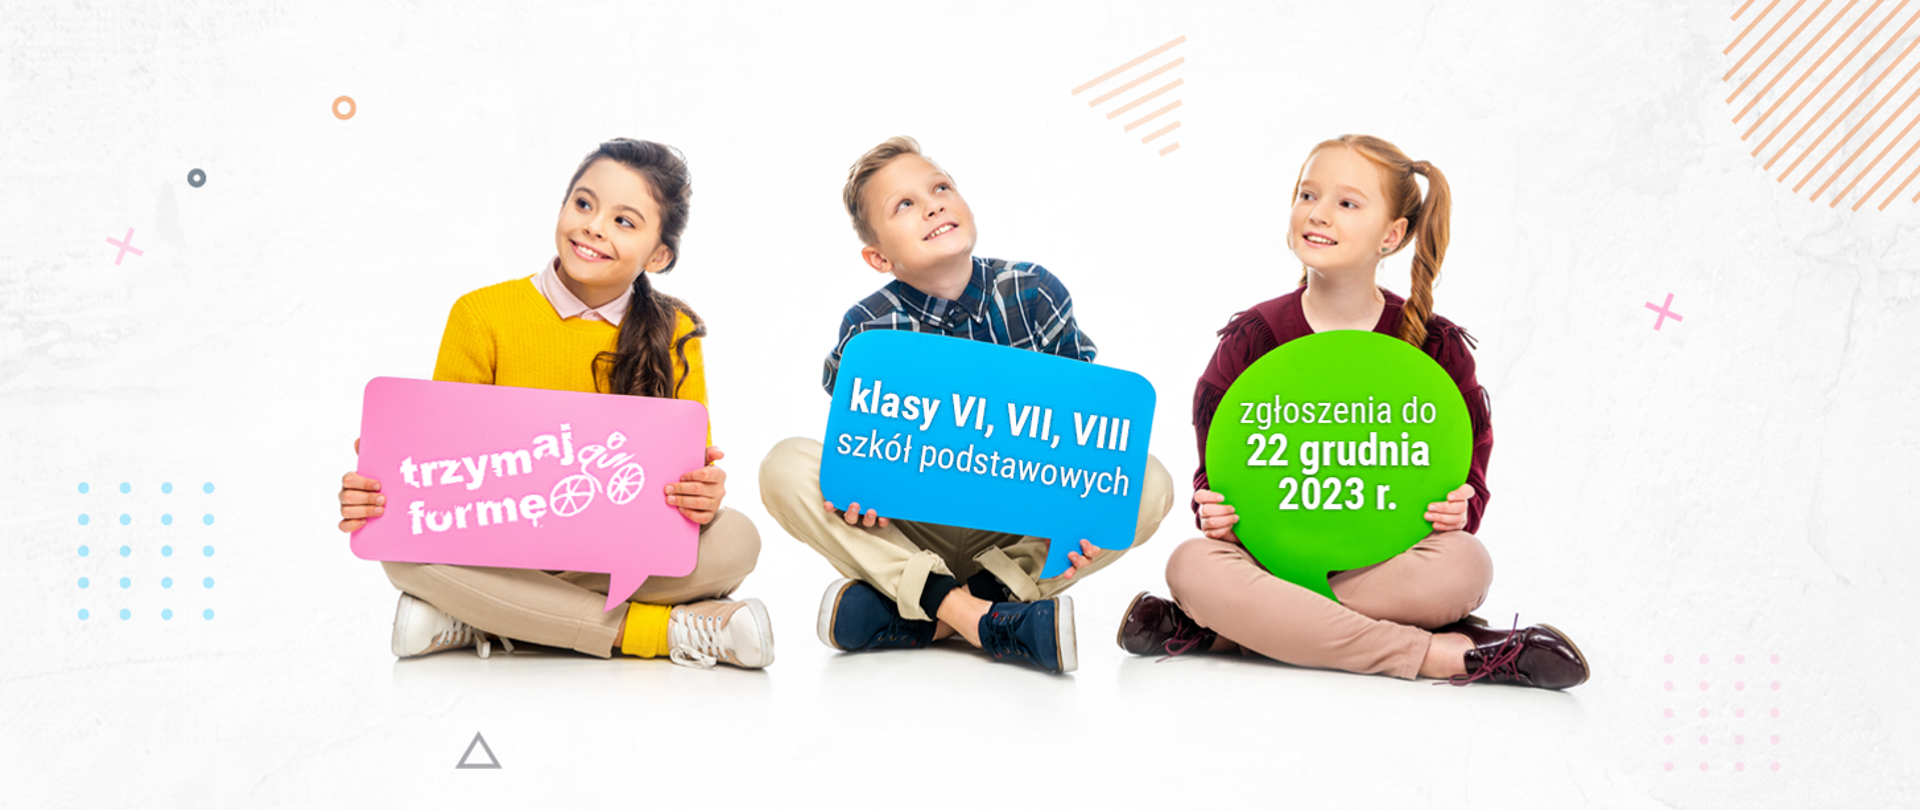 Zdjęcie przedstawia trójkę uśmiechniętych dzieci siedzących na podłodze. Każde z nich trzyma kolorowy znak z tekstem. Dziecko po lewej stronie, dziewczynka w żółtym swetrze i białych spodniach, trzyma różowy znak z napisem "trzymaj formę". Chłopiec w środku, ubrany w kratowaną koszulę i beżowe spodnie, trzyma niebieski znak z tekstem "klasy VI, VII, VIII szkół podstawowych". Dziewczynka po prawej, w bordowej bluzie i brązowych spodniach, trzyma zielony znak z napisem "zgłoszenia do 22 grudnia 2023 r.". Tło jest jasne z abstrakcyjnymi grafikami i kształtami w pastelowych kolorach.